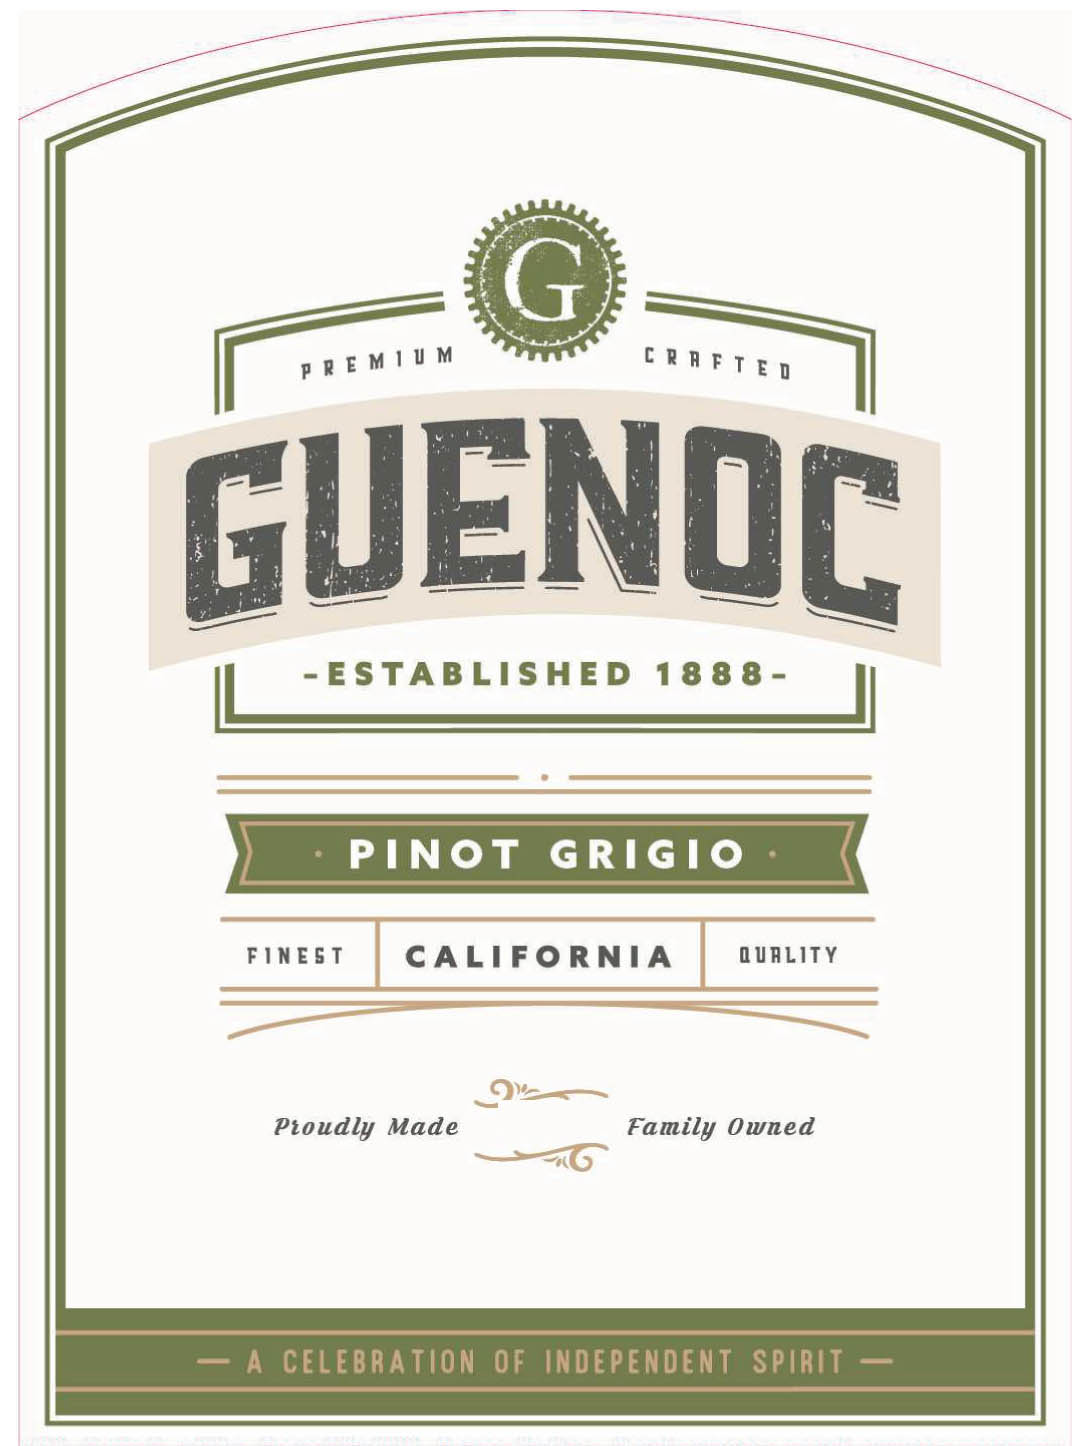 Guenoc - California - Pinot Grigio label